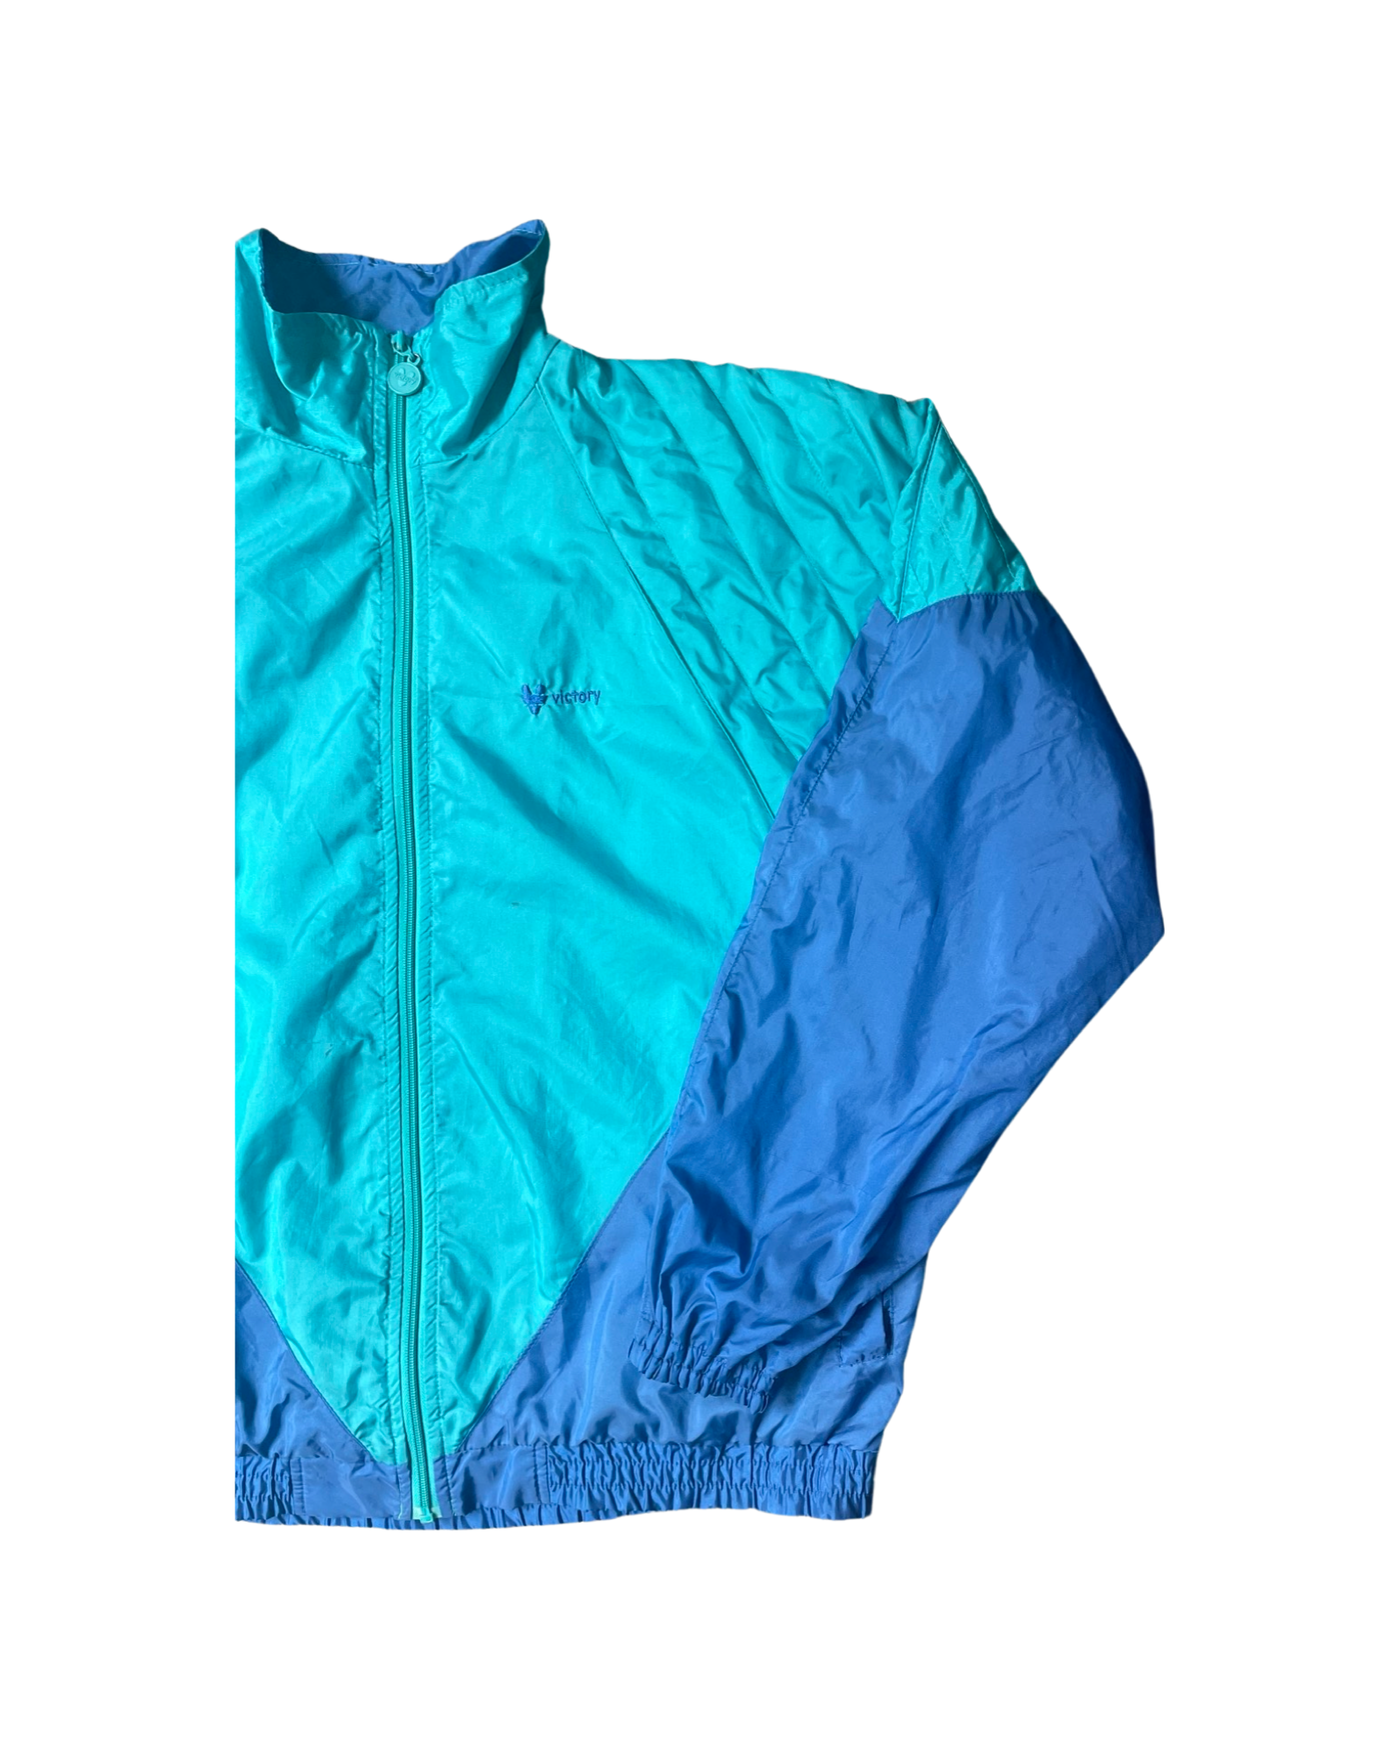 Vintage 90's Parachute jacket